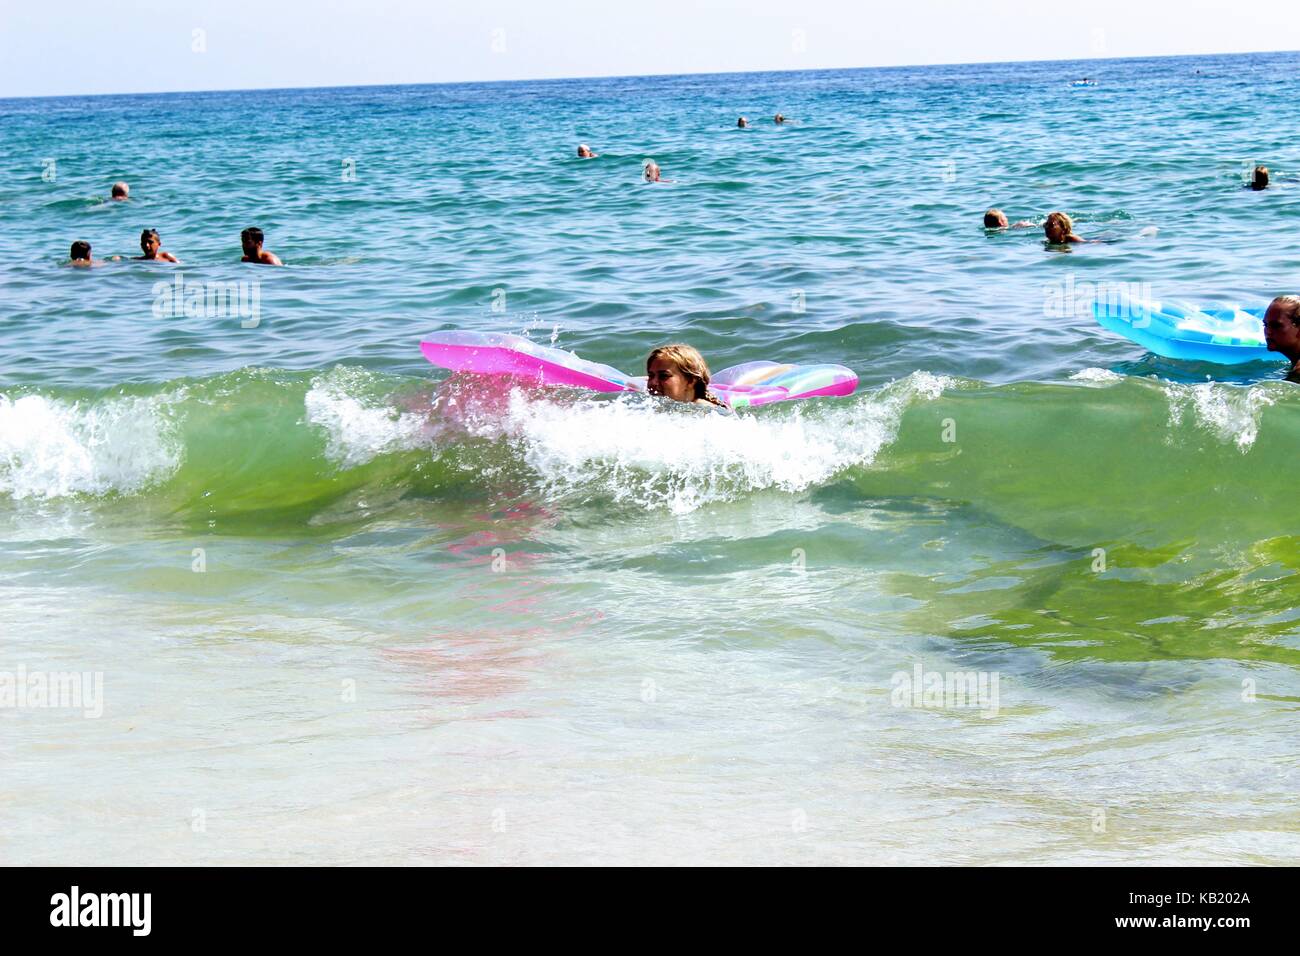 Juli, 2017 - Urlauber mit aufblasbaren Matratzen im Meer schwimmen im Cleopatra Beach (Alanya, Türkei). Stockfoto